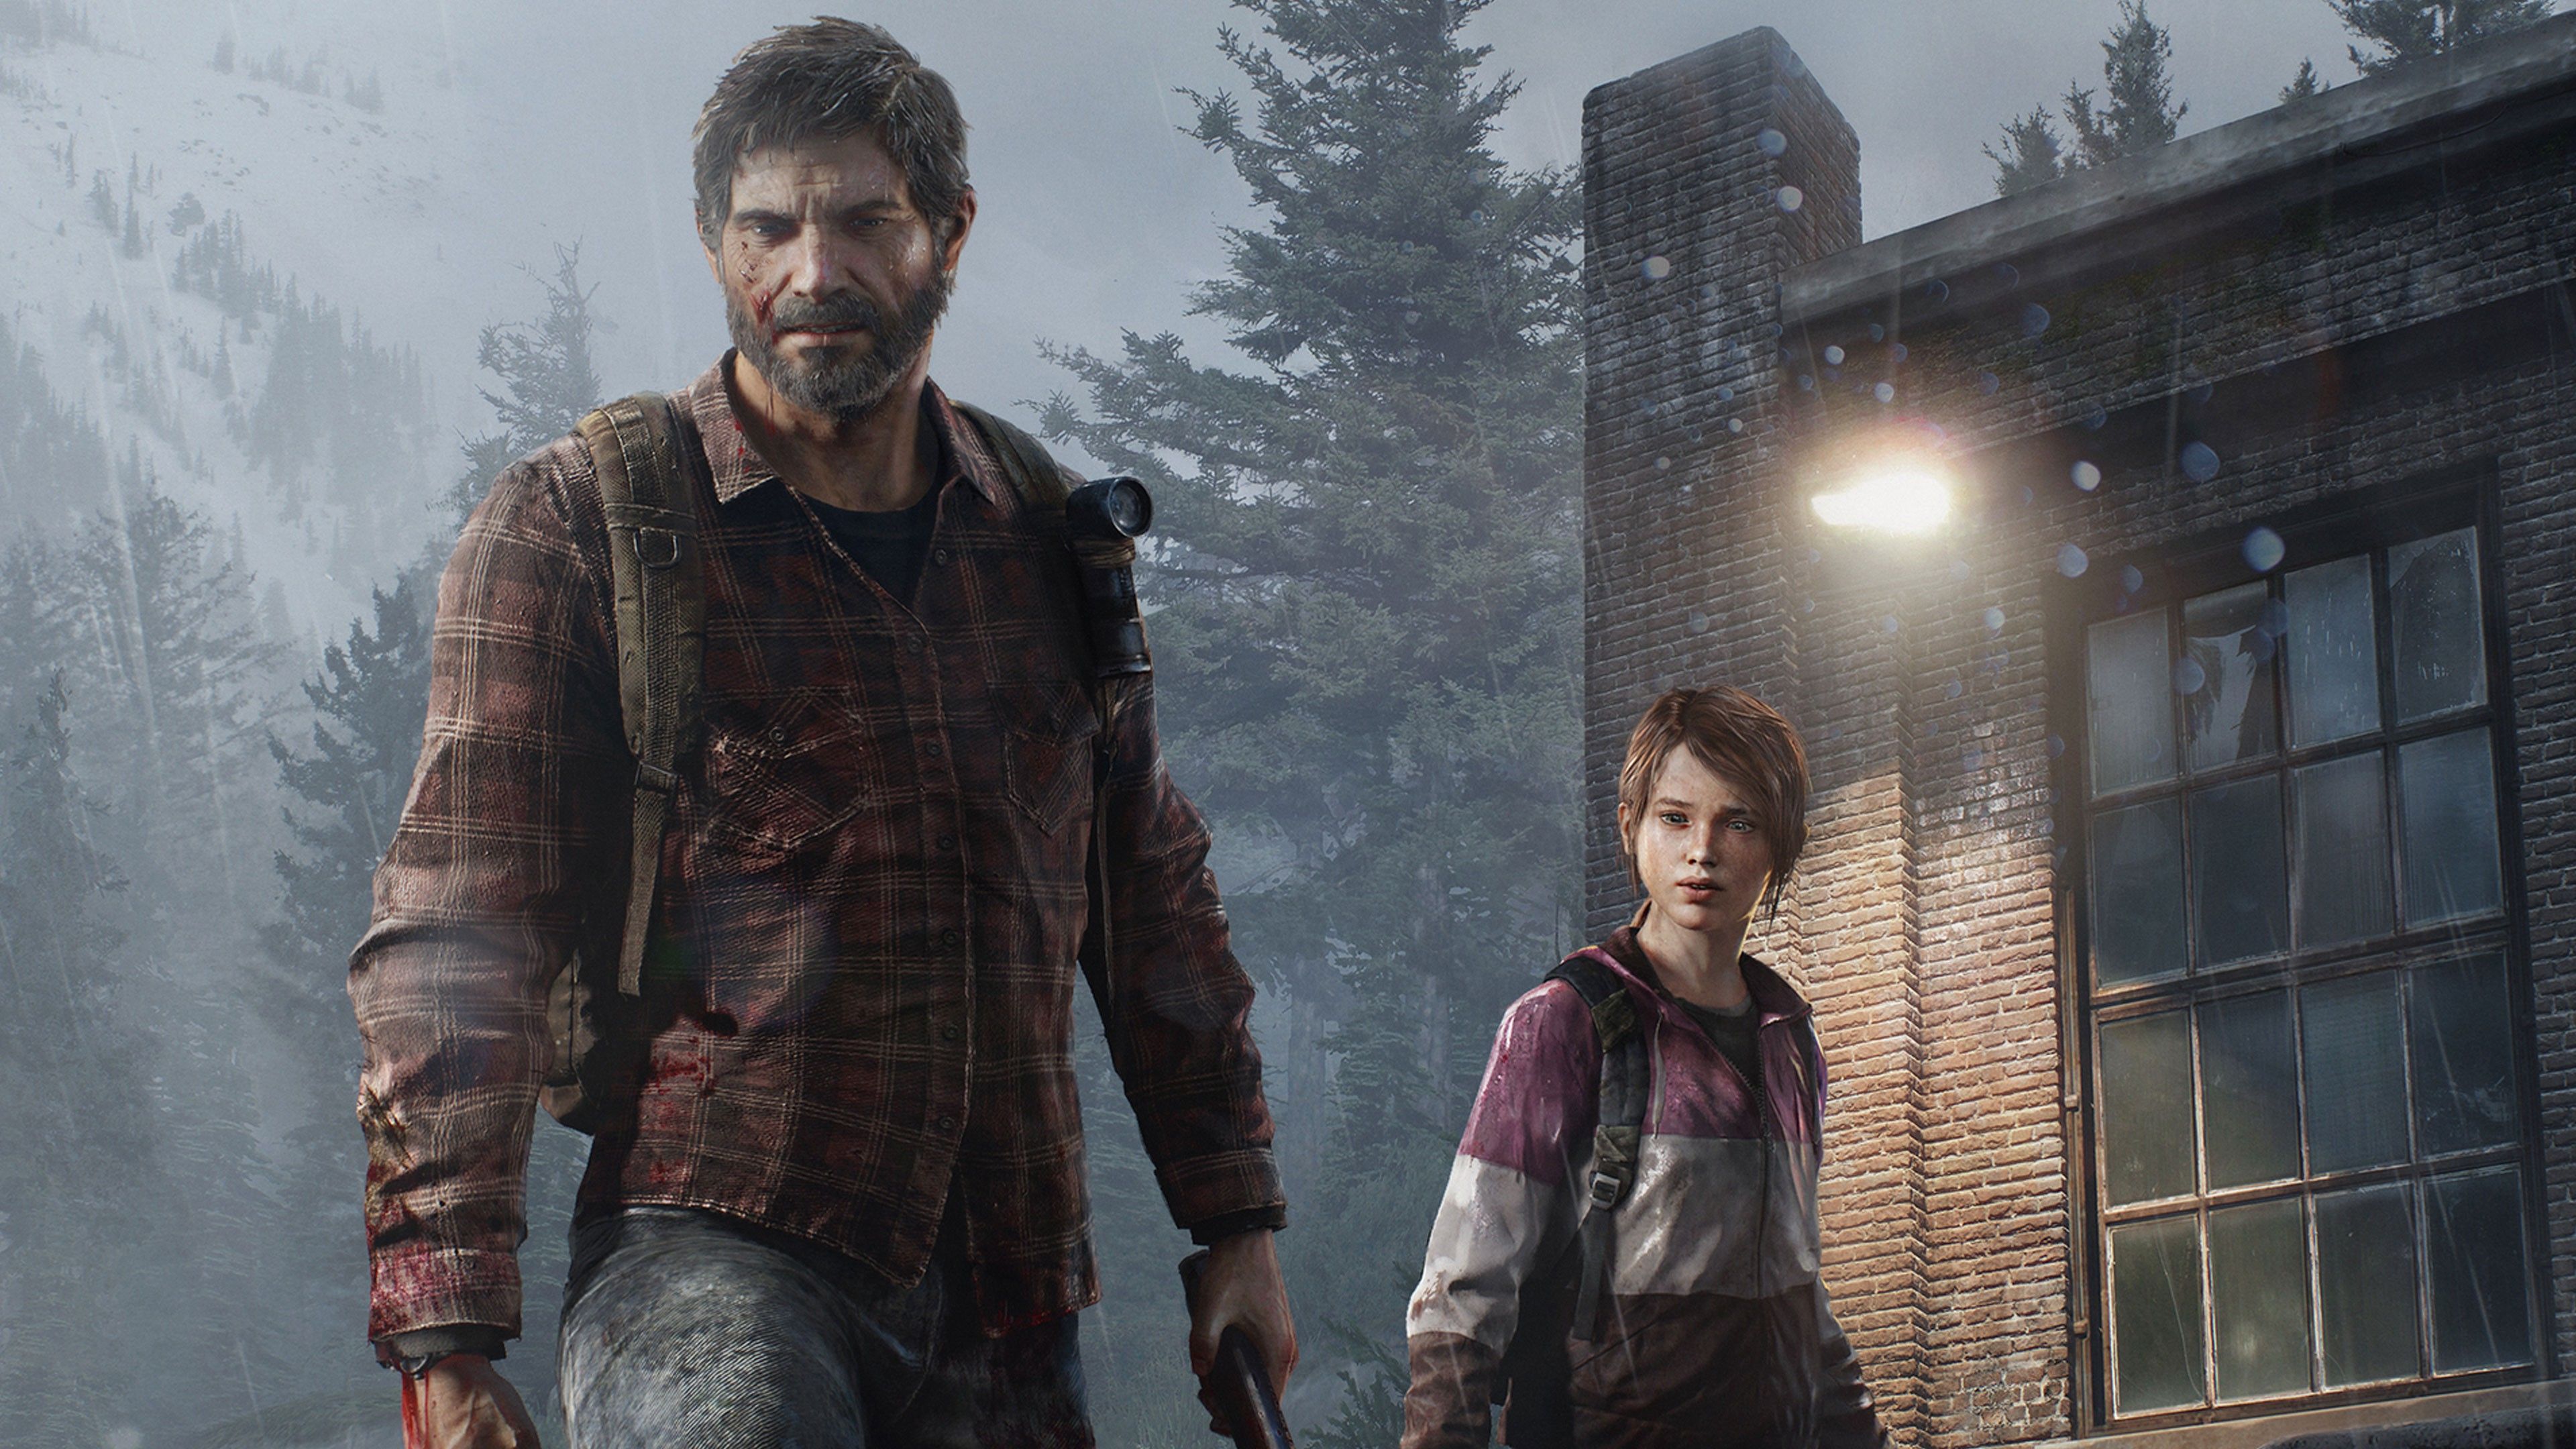 The Last of Us #Joel video games #Ellie #4K #wallpaper